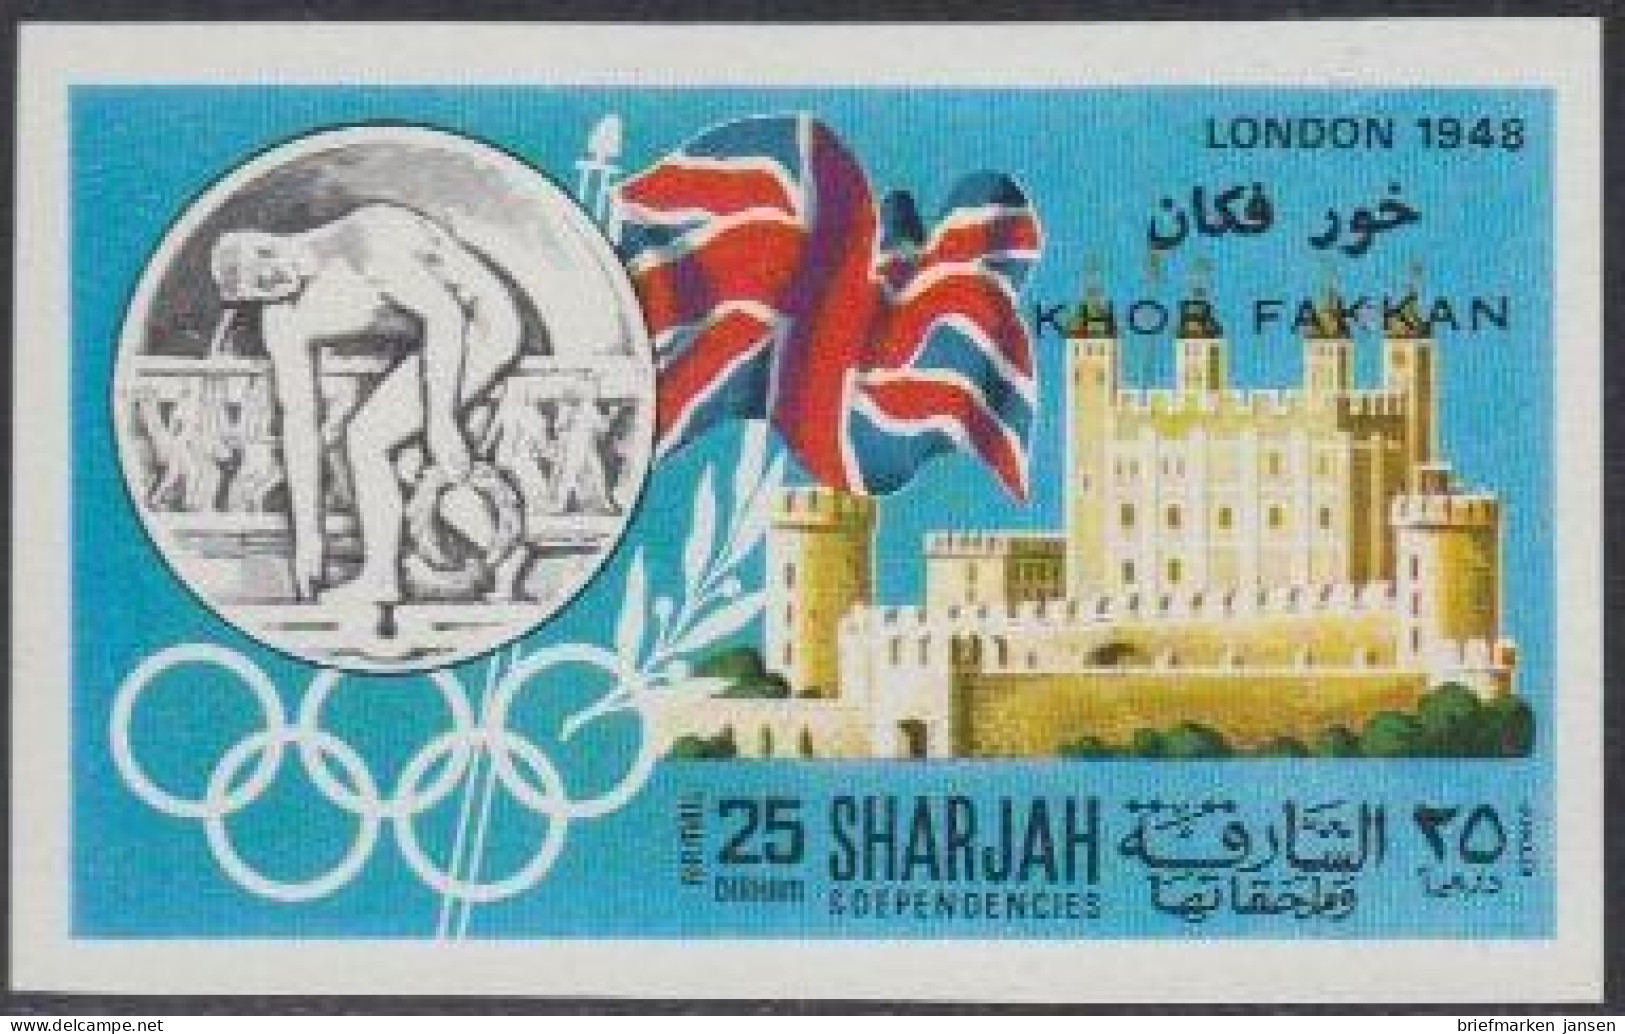 Sharjah Khor Fakkan Mi.Nr. 164B Geschichte D.Olymp. Spiele, London 1948 (25) - Schardscha